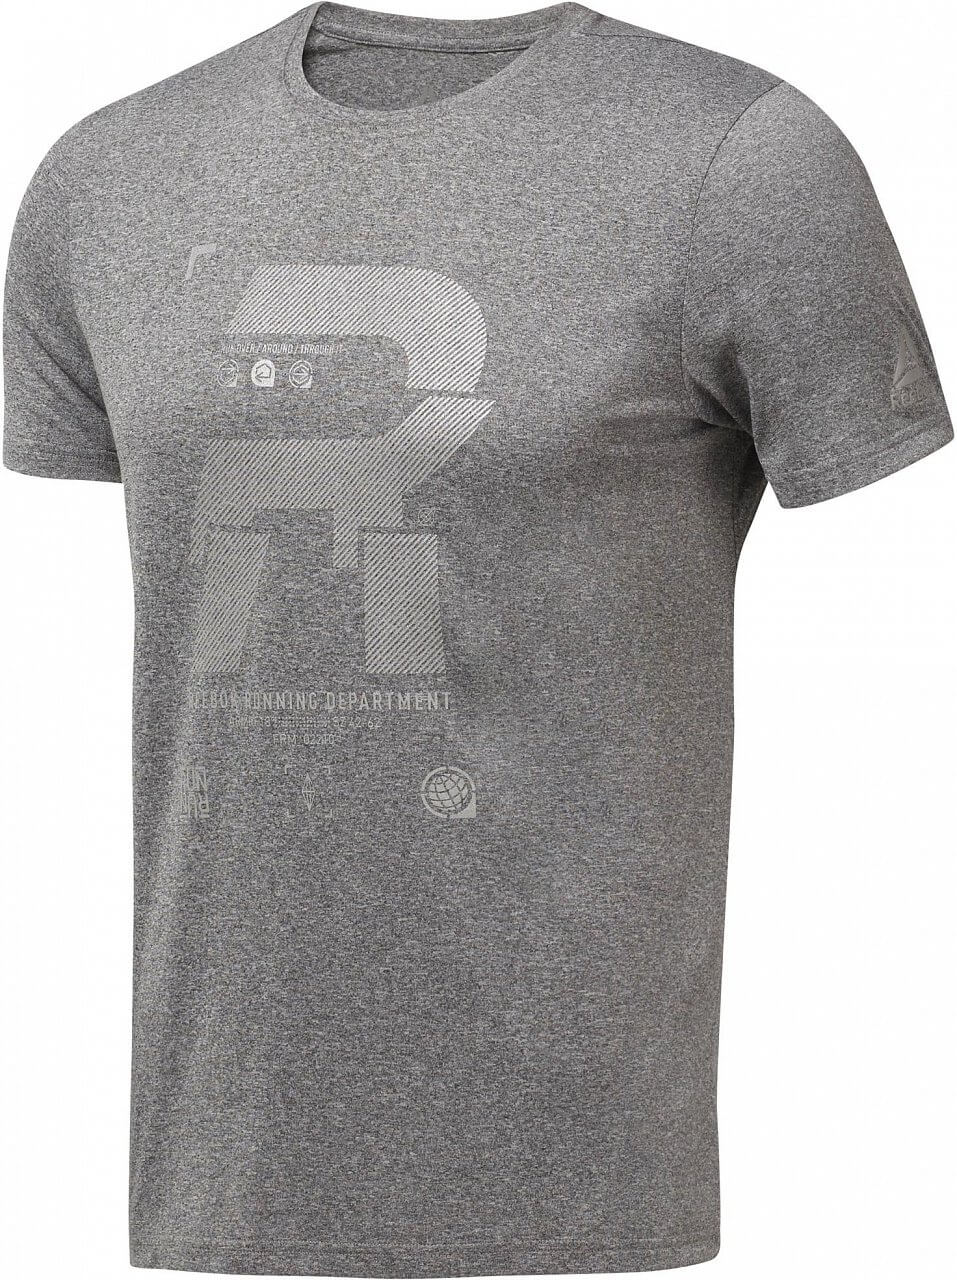 Pánske bežecké tričko Reebok Running Reflective Tee